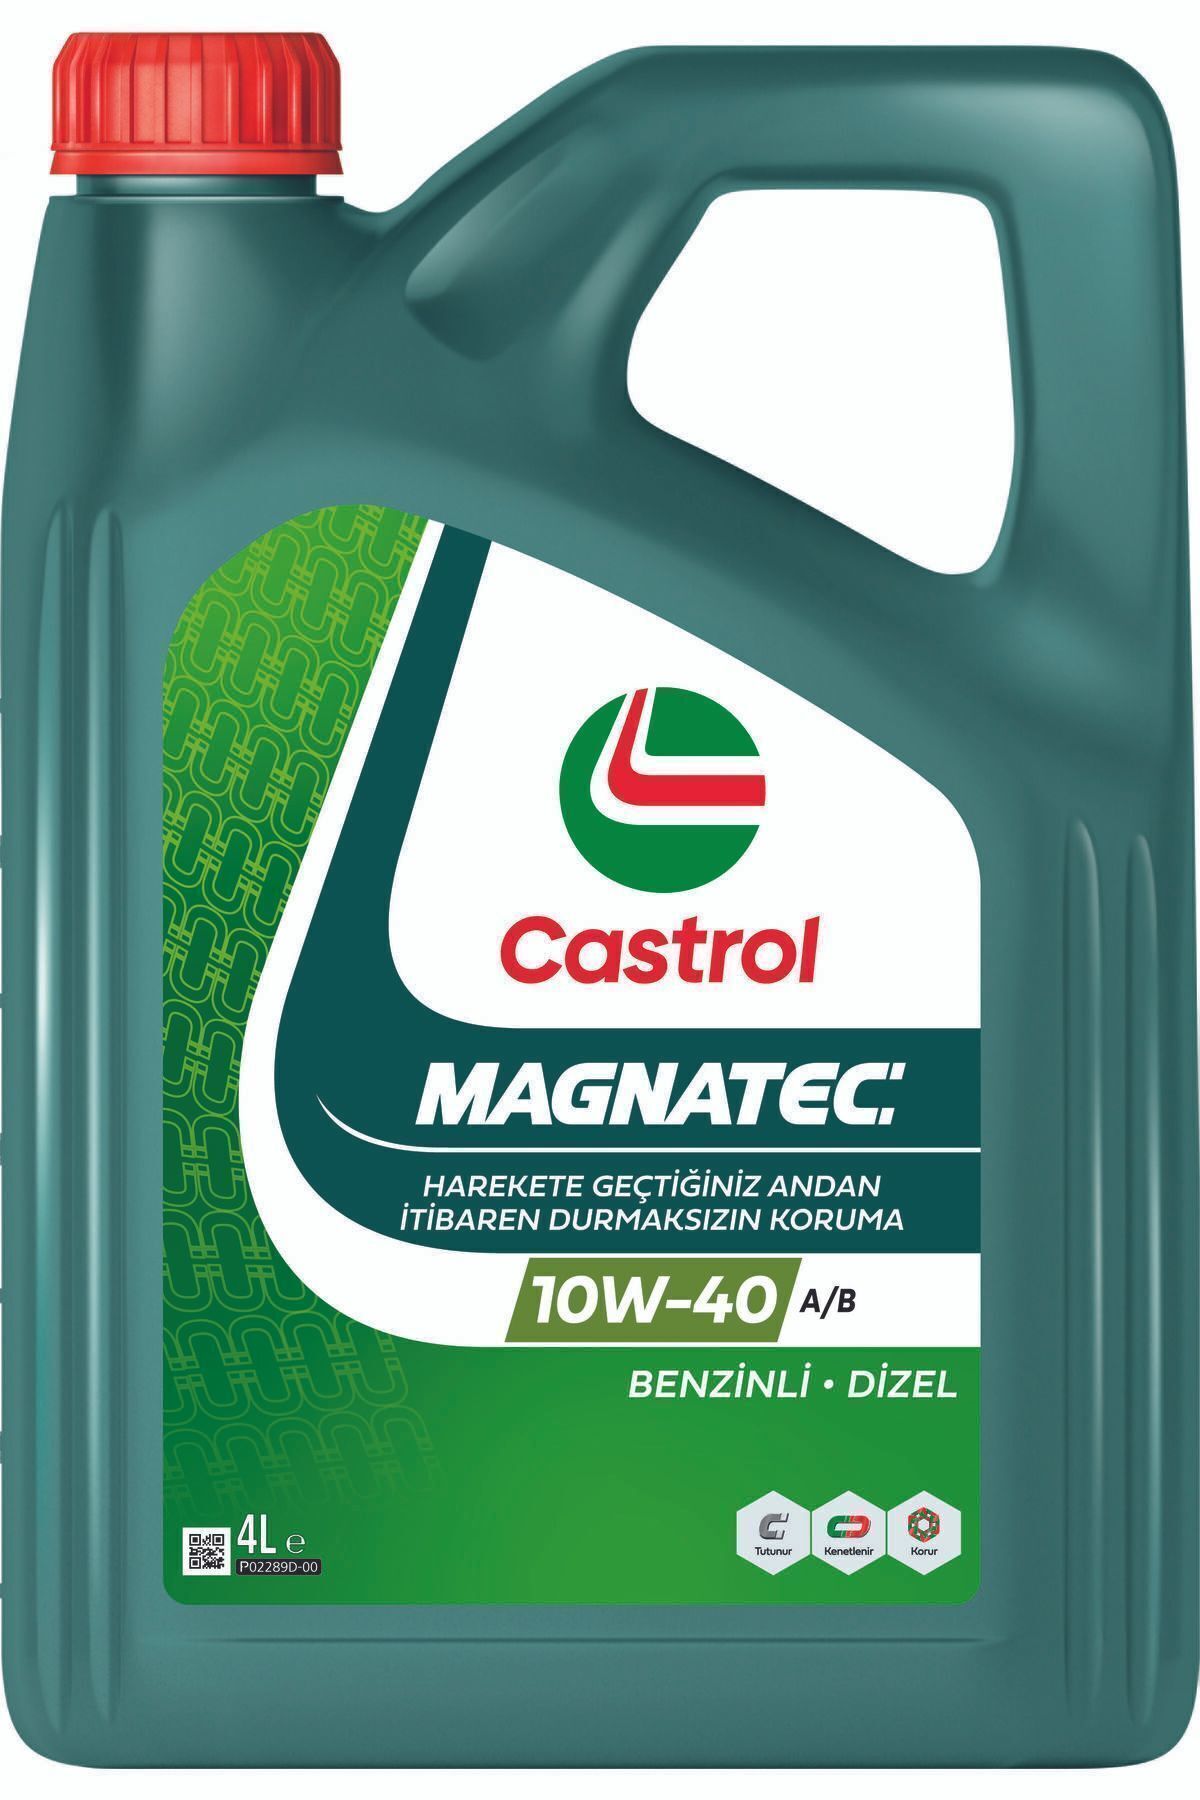 Castrol Magnatec 10w-40 A/B 4 Litre